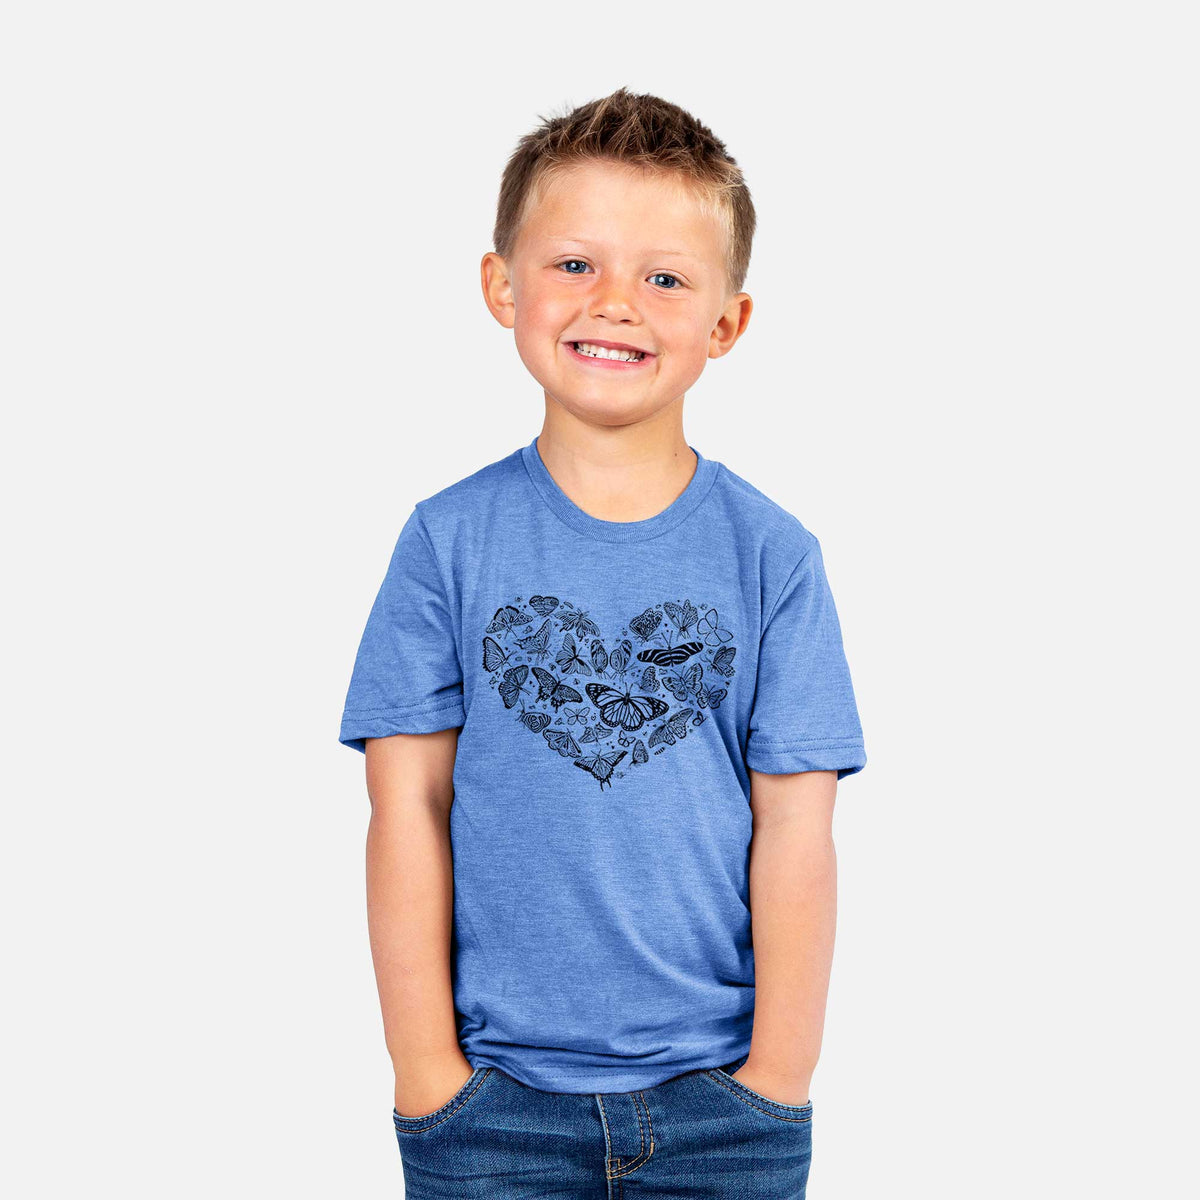 Heart Full of Butterflies - Kids Shirt